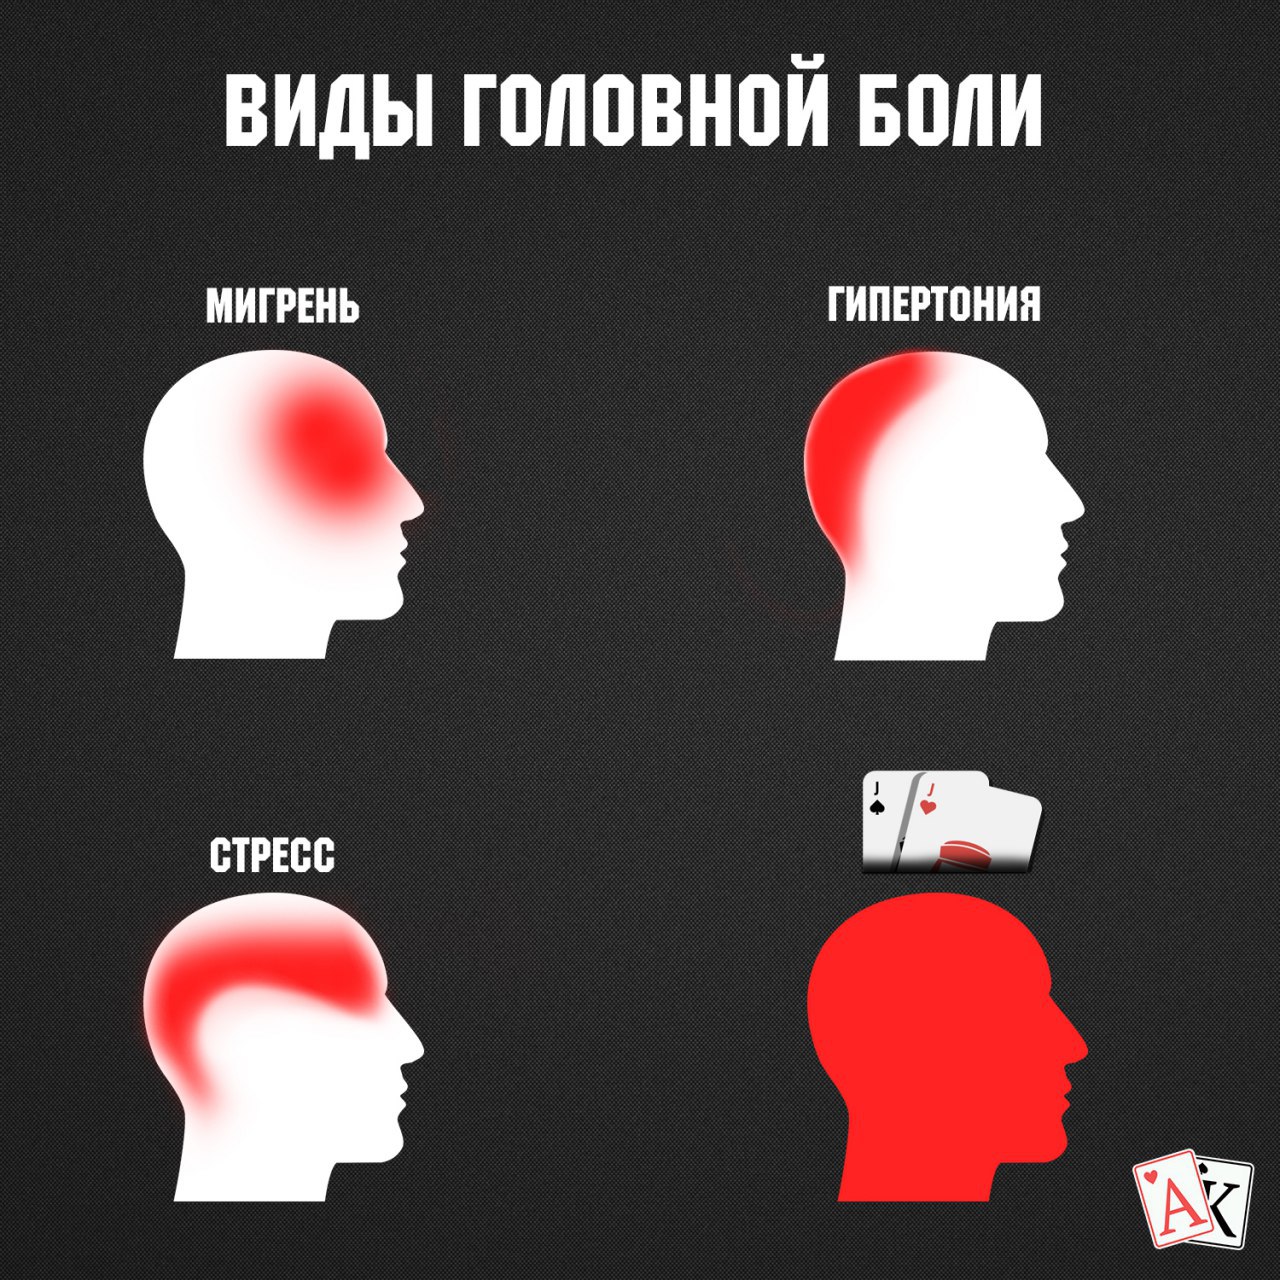 Боль в теменной области головы. Виды головной боли. Болит голова. Локализация боли в голове. Типы головной боли картинки.